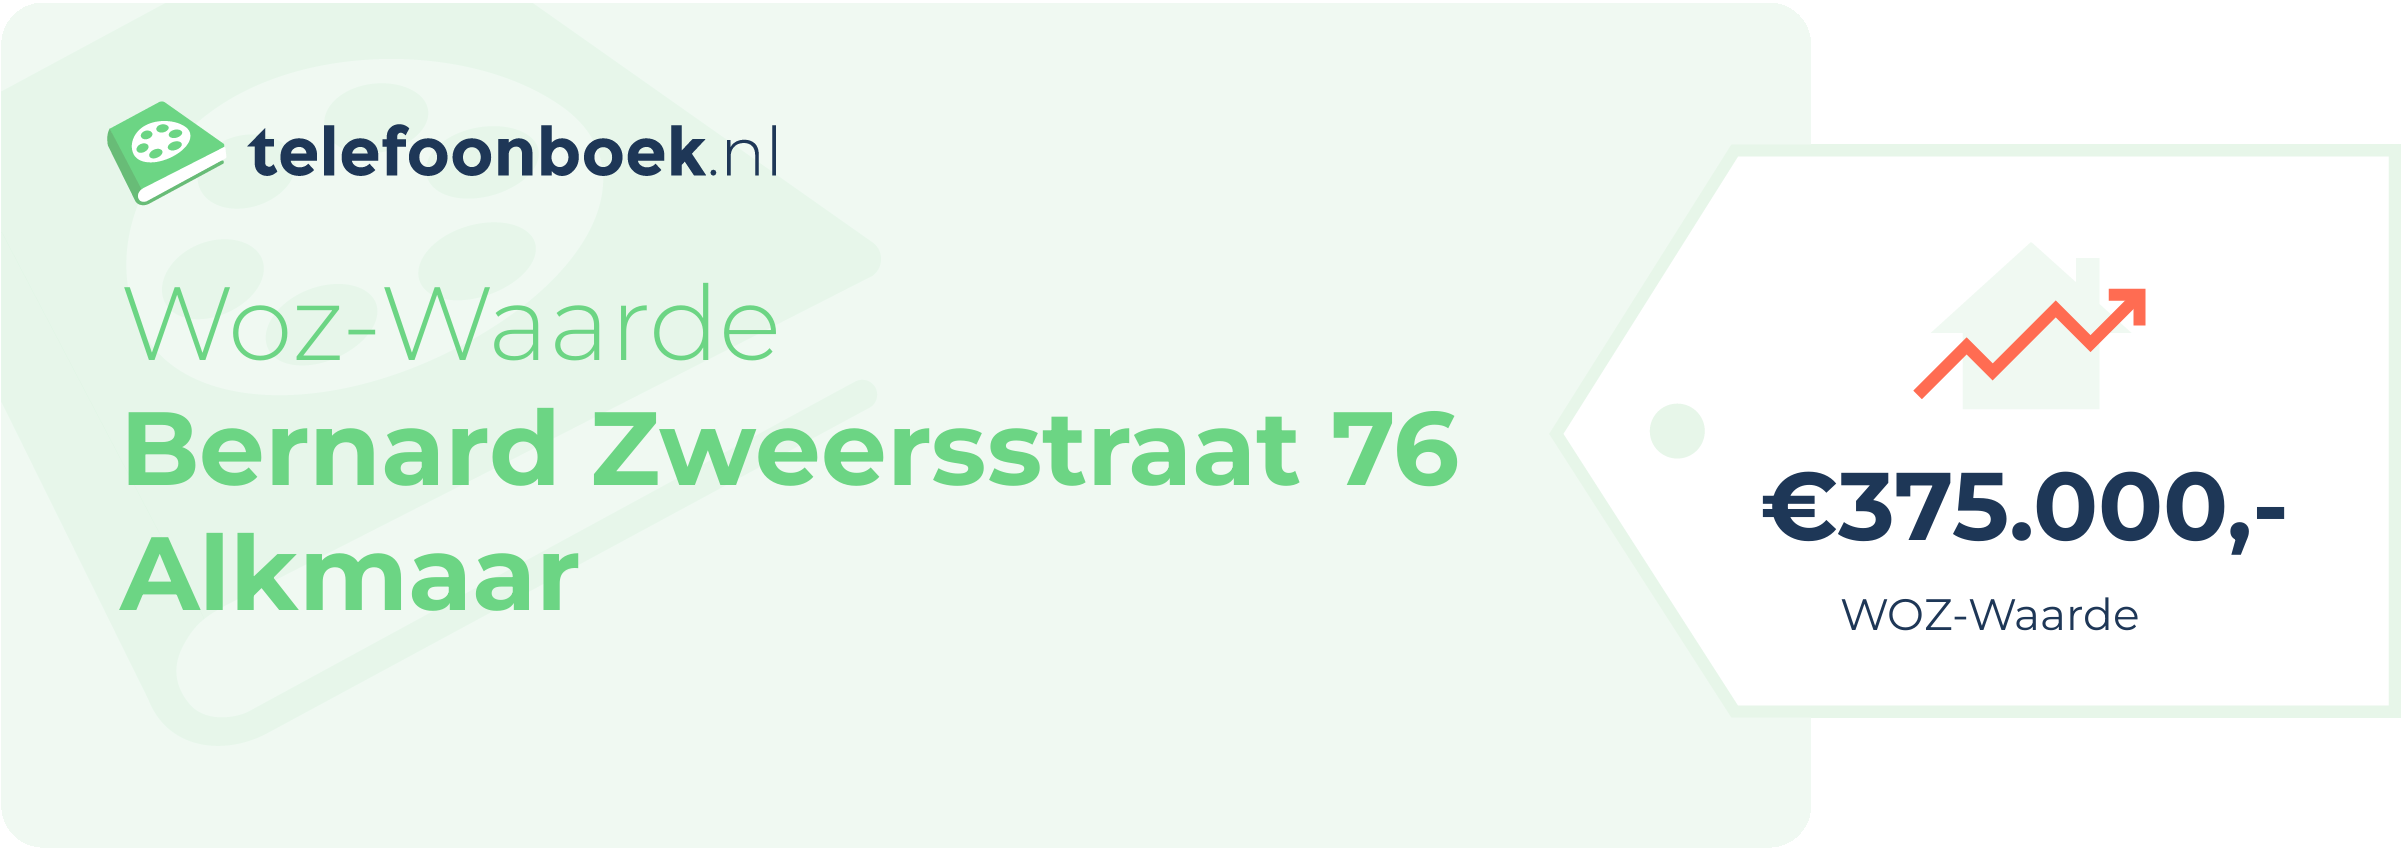 WOZ-waarde Bernard Zweersstraat 76 Alkmaar